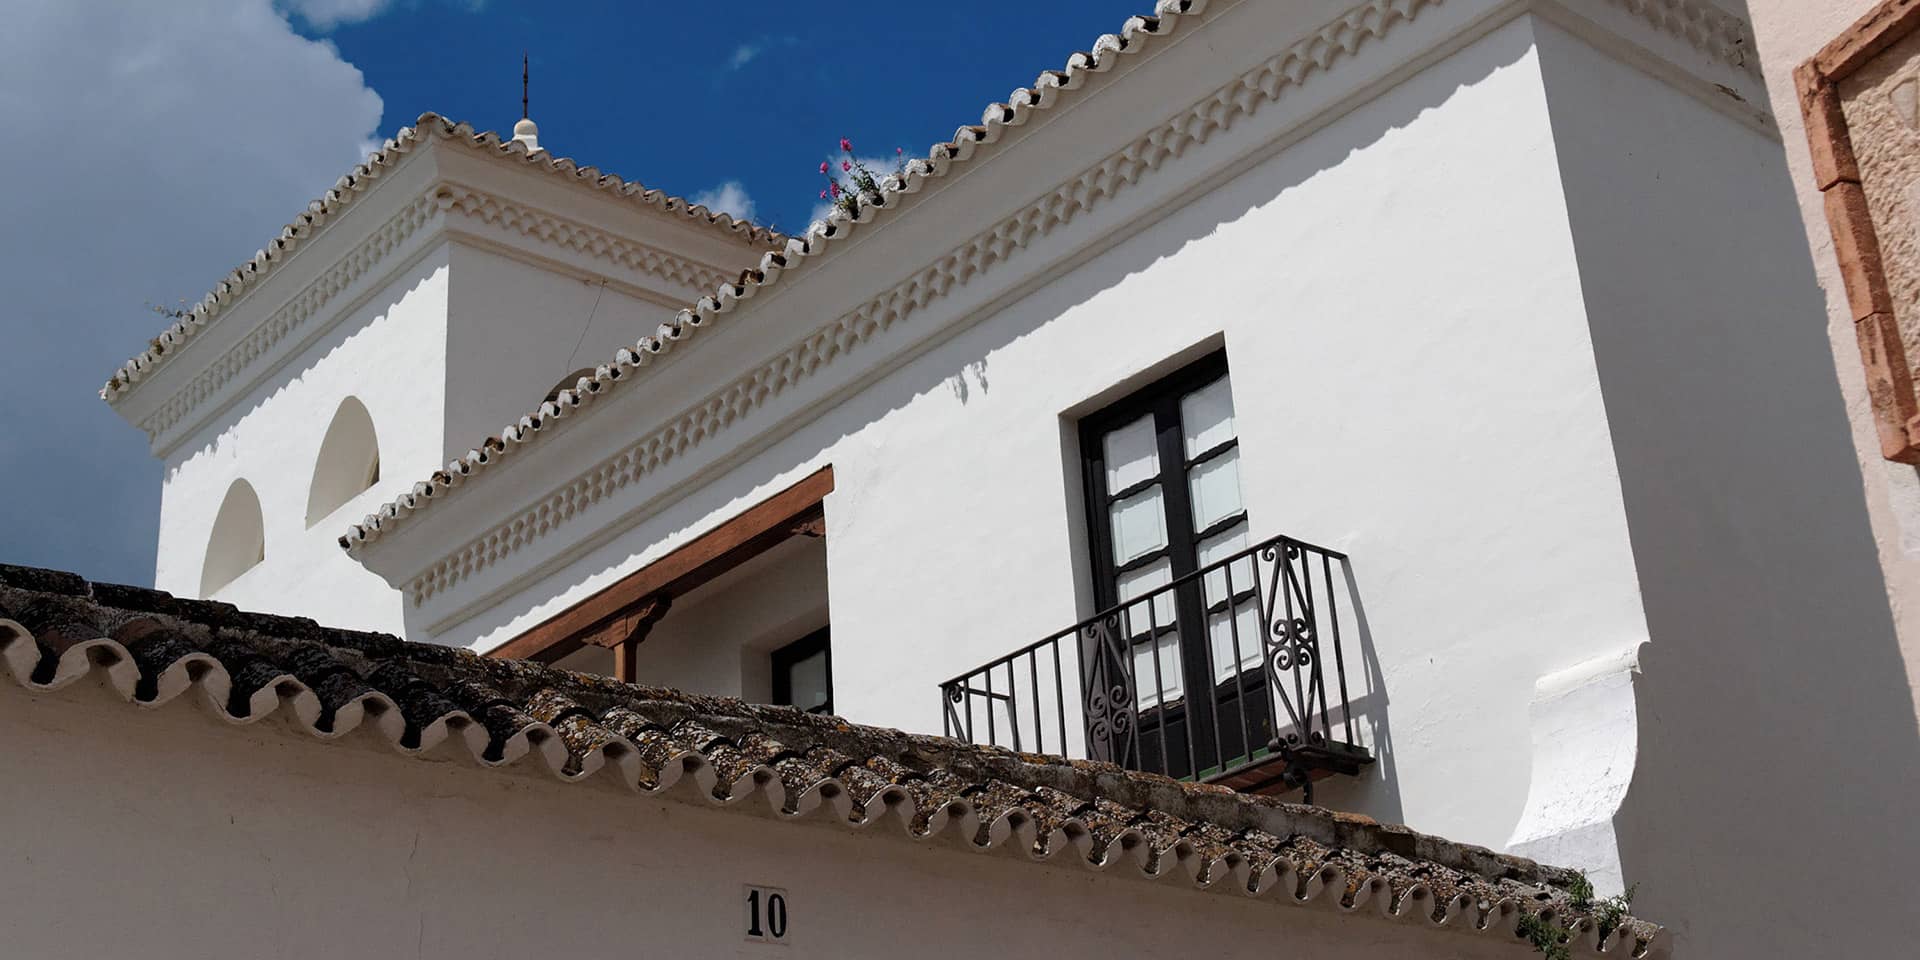 Billede af bygning med balcon i Spanien